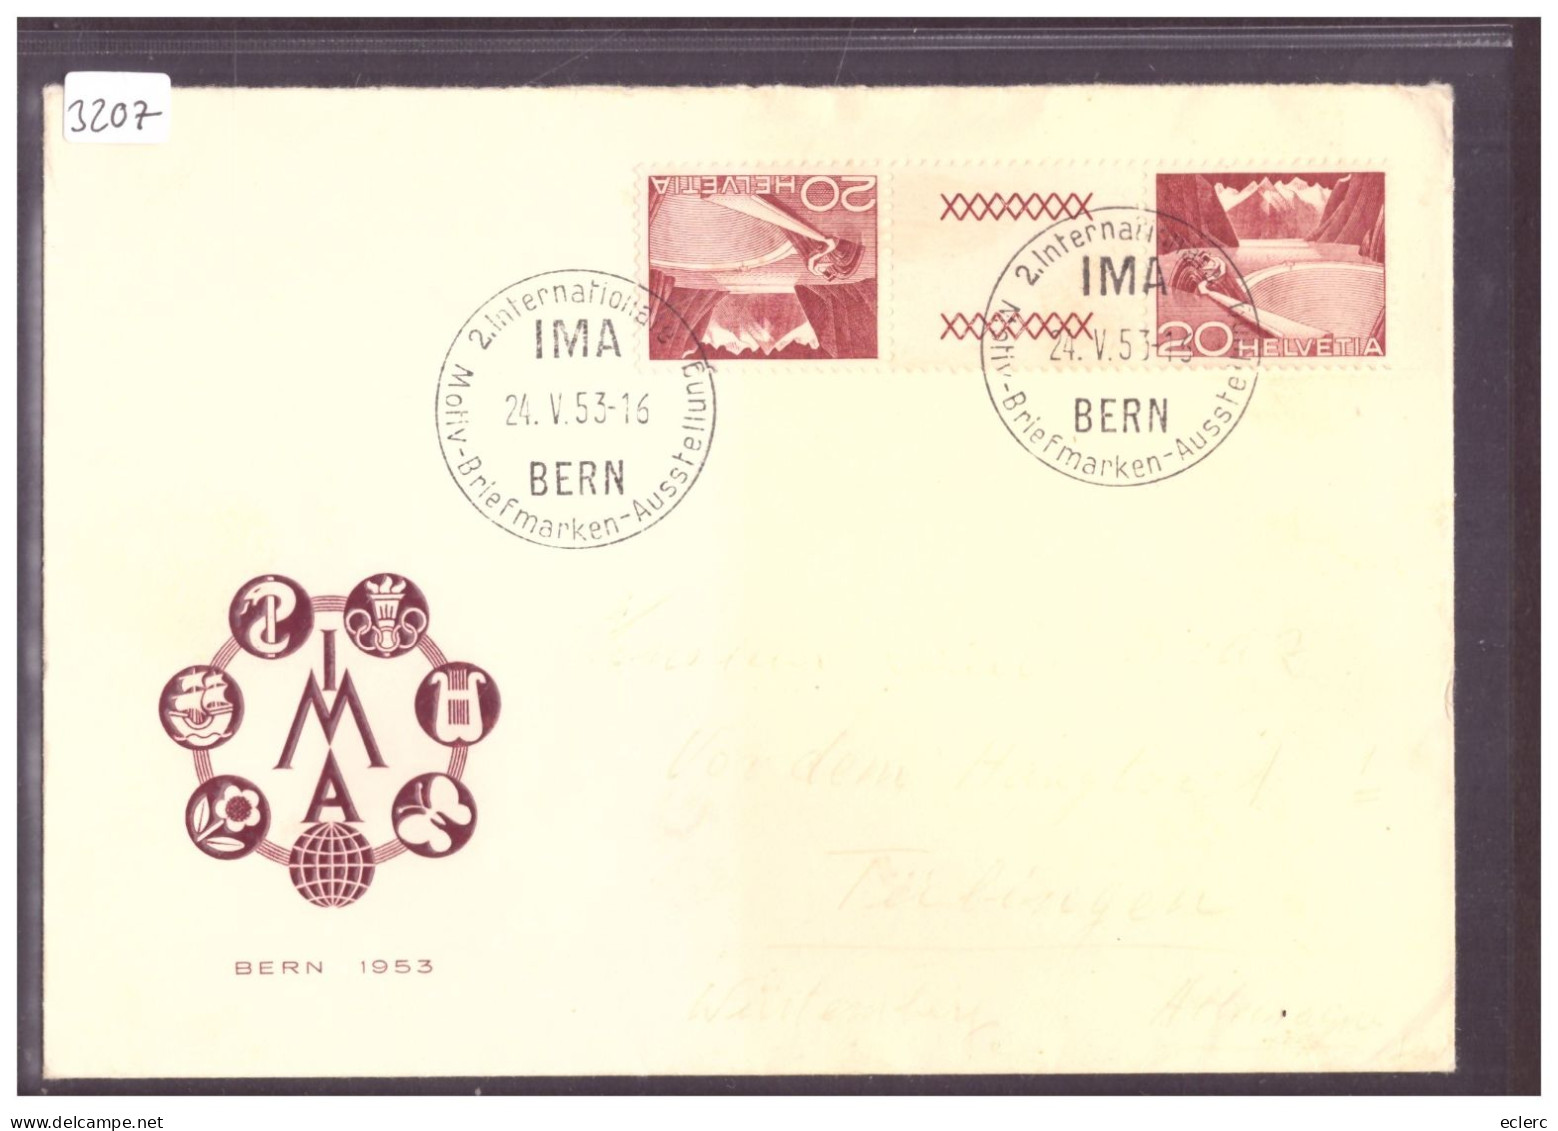 IMA BERN 1953 - MOTIV BRIEFMARKEN AUSSTELLUNG - Storia Postale